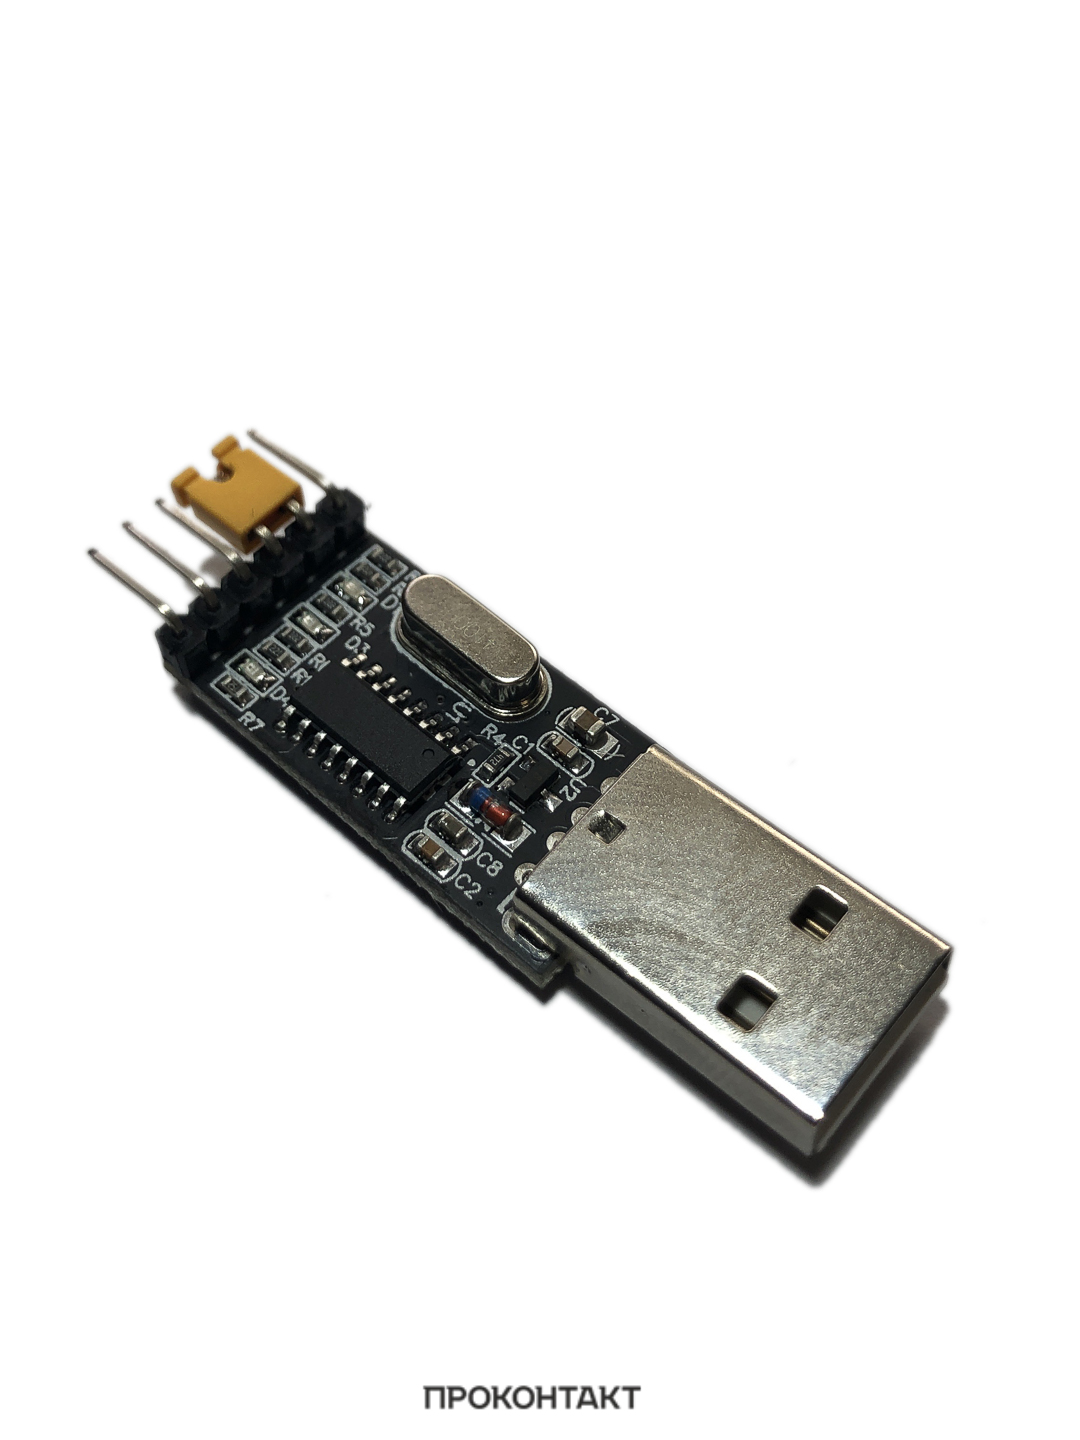 Купить Модуль преобразователя интерфейсов USB to TTL CH340G тип1 в Челябинске